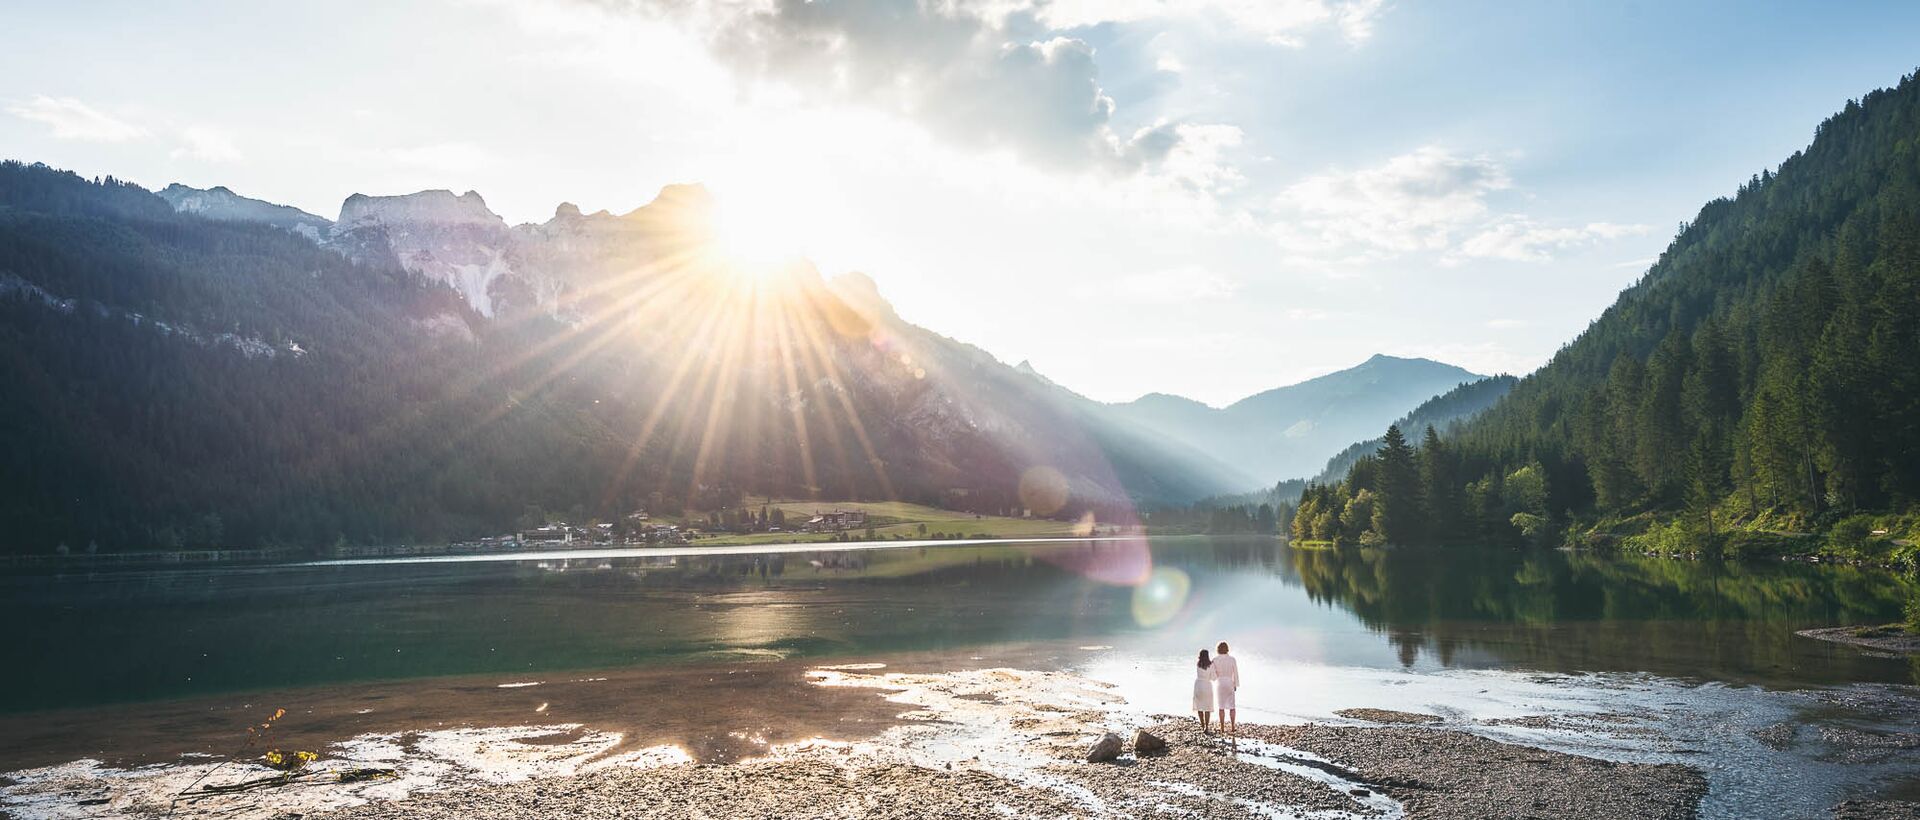 Natur & Wellness in den Bergen | Wellnessurlaub in den Best Alpine Wellness Hotels